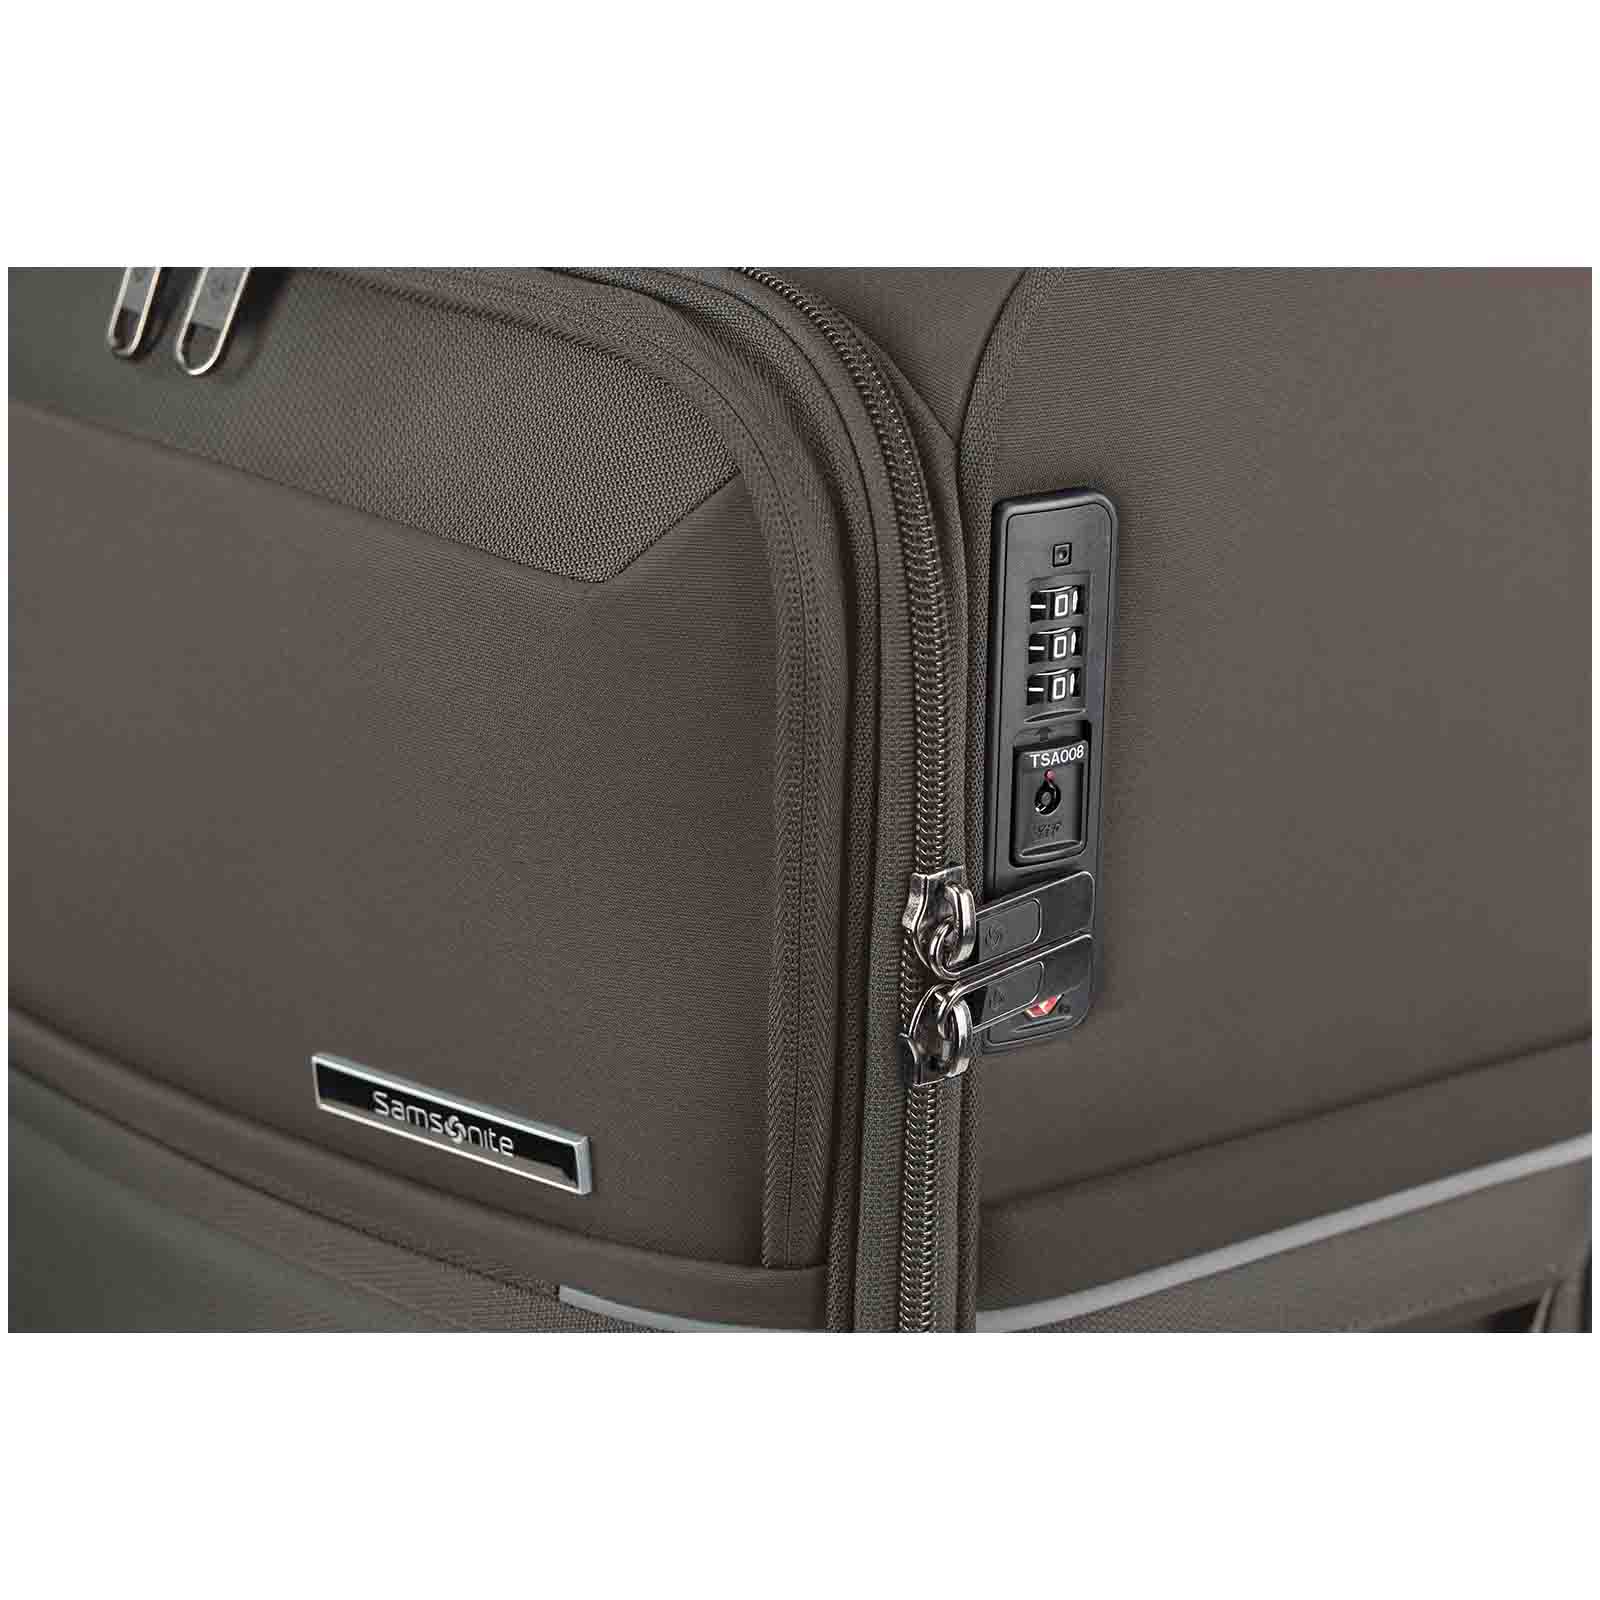 Samsonite-73h-55cm-Suitcase-Platinum-Grey-Lock